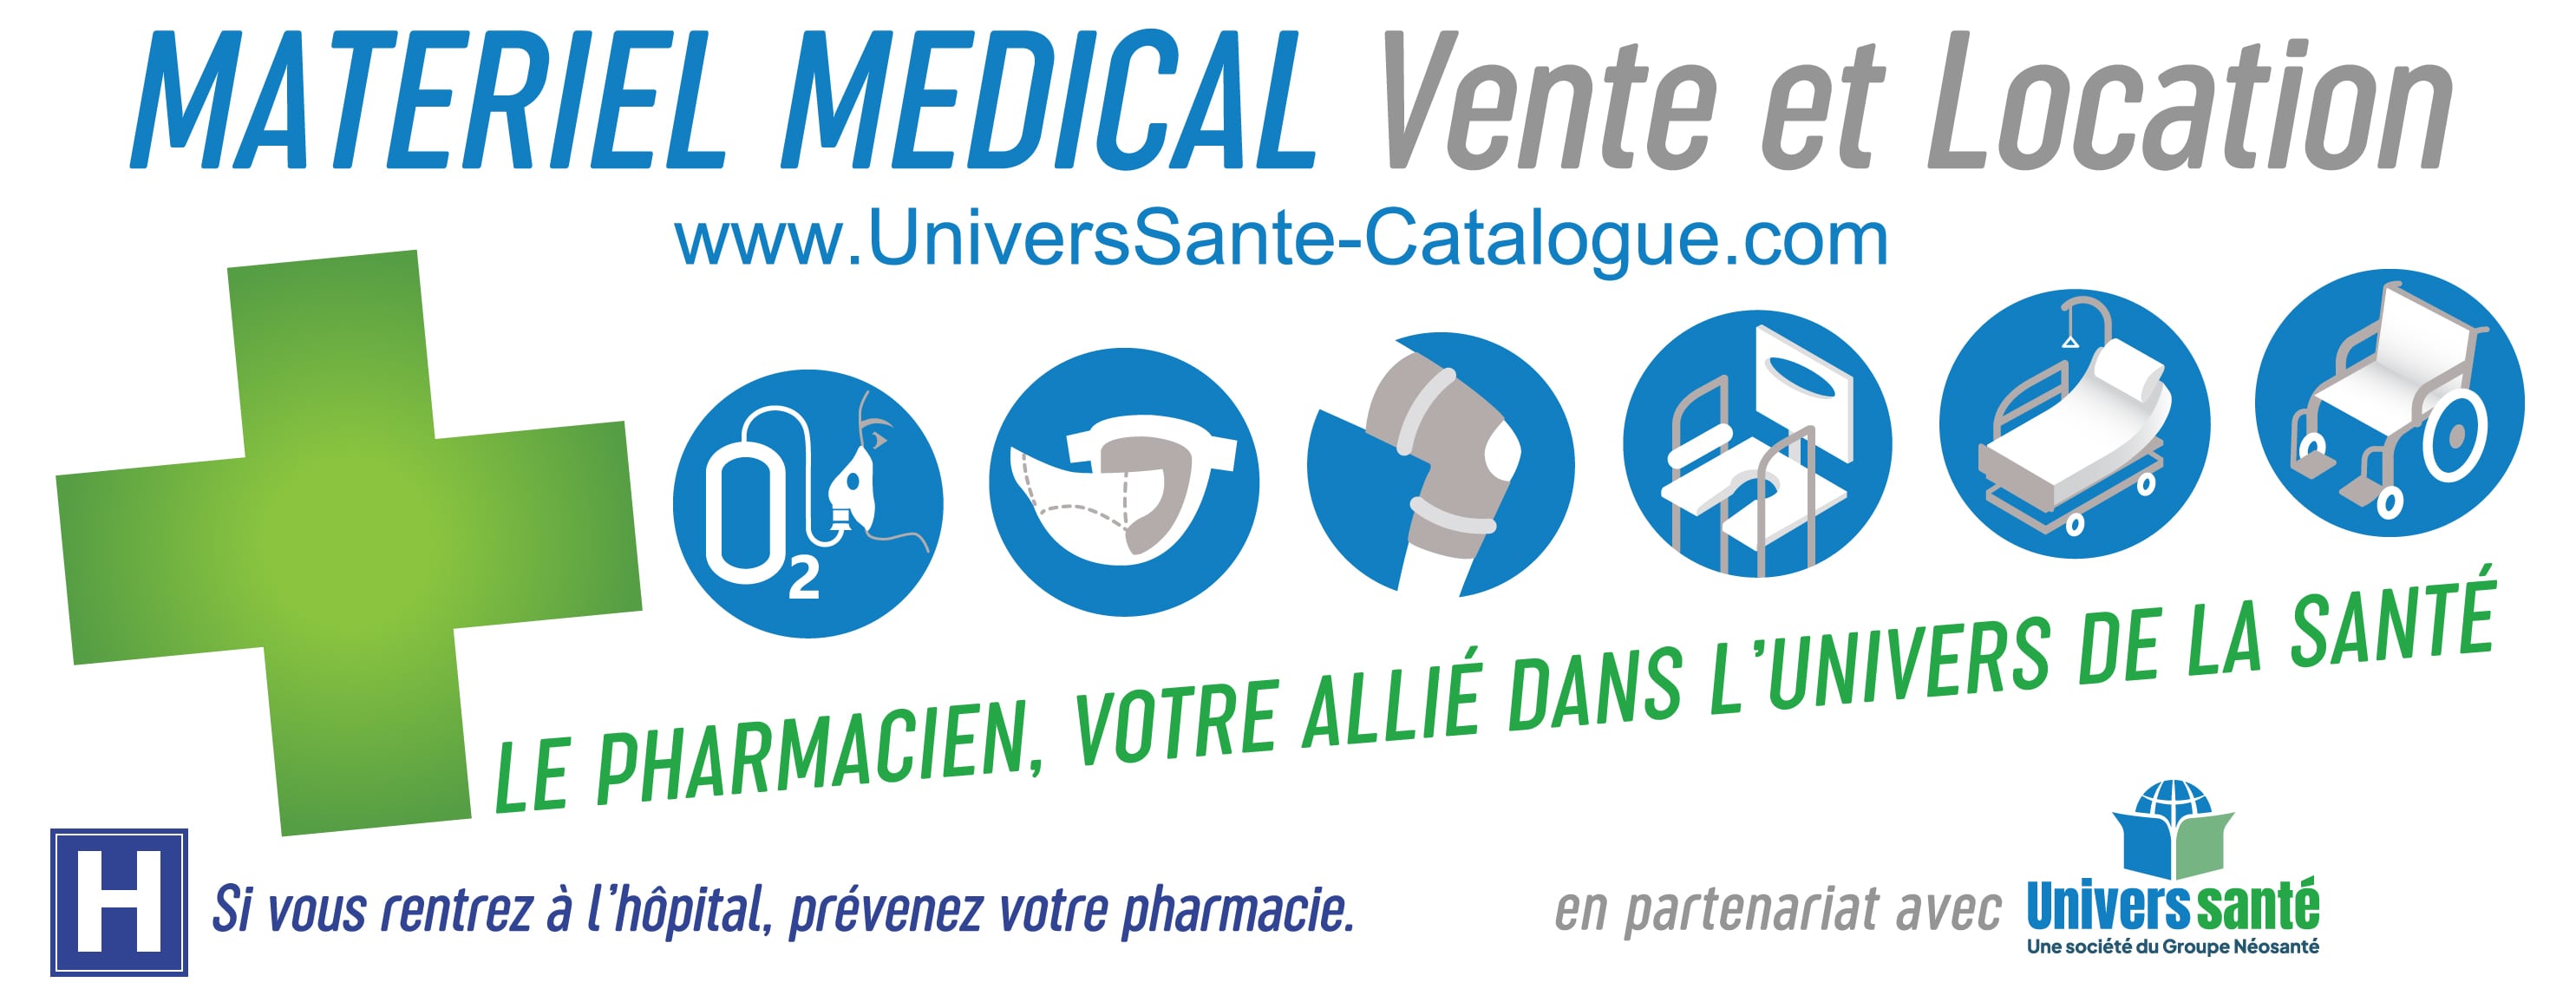 Tout le matériel médical est disponible dans les Pharmacie en partenariat avec Univers Santé